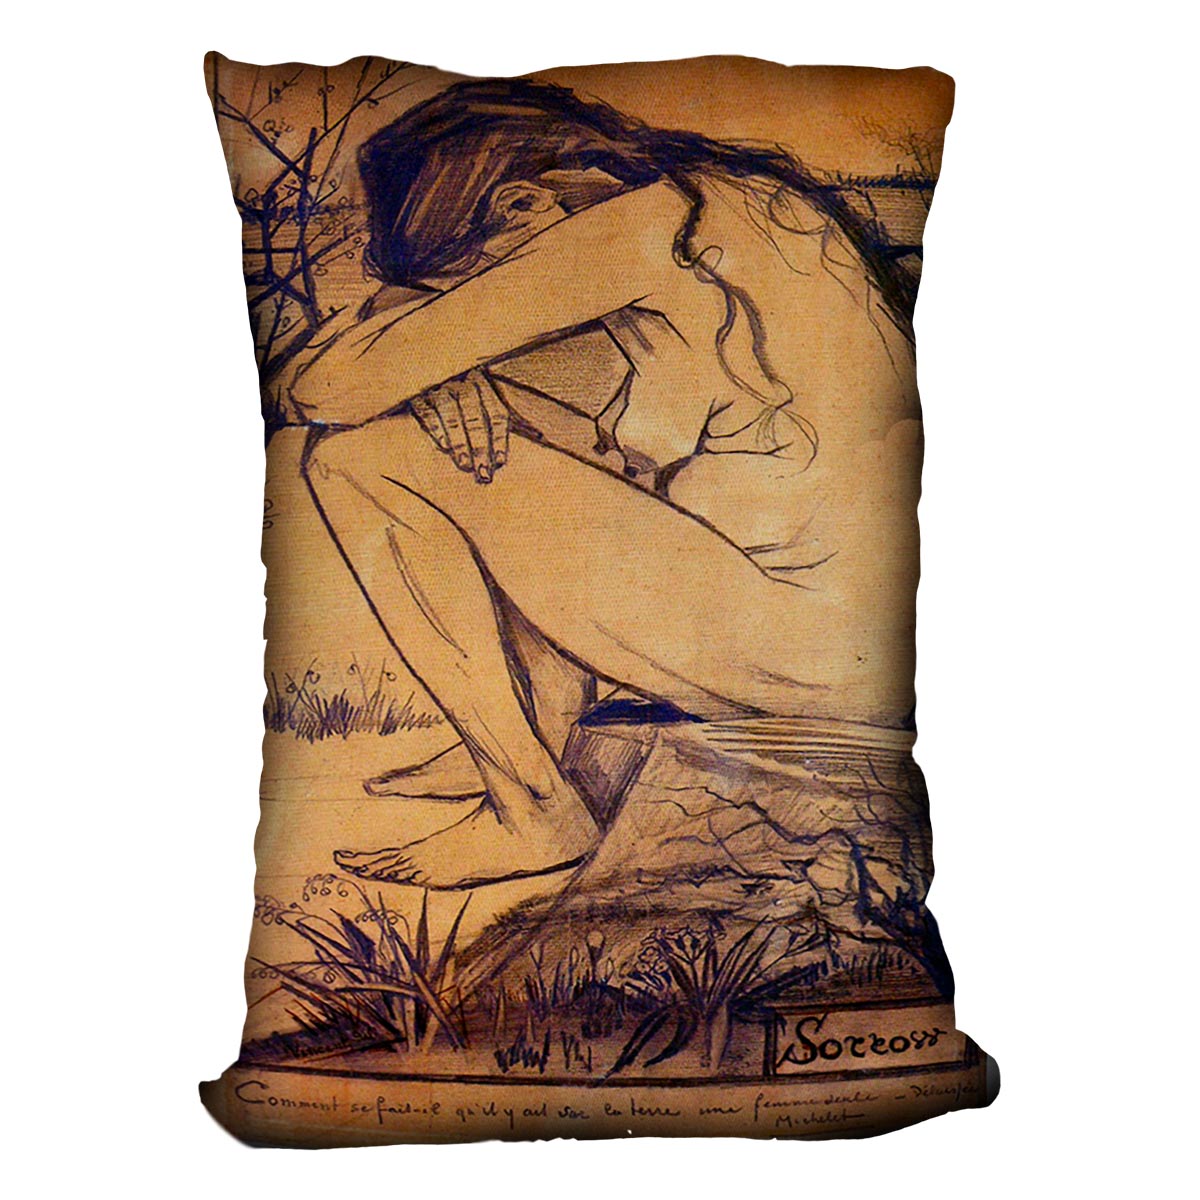 Sorrow by Van Gogh Cushion